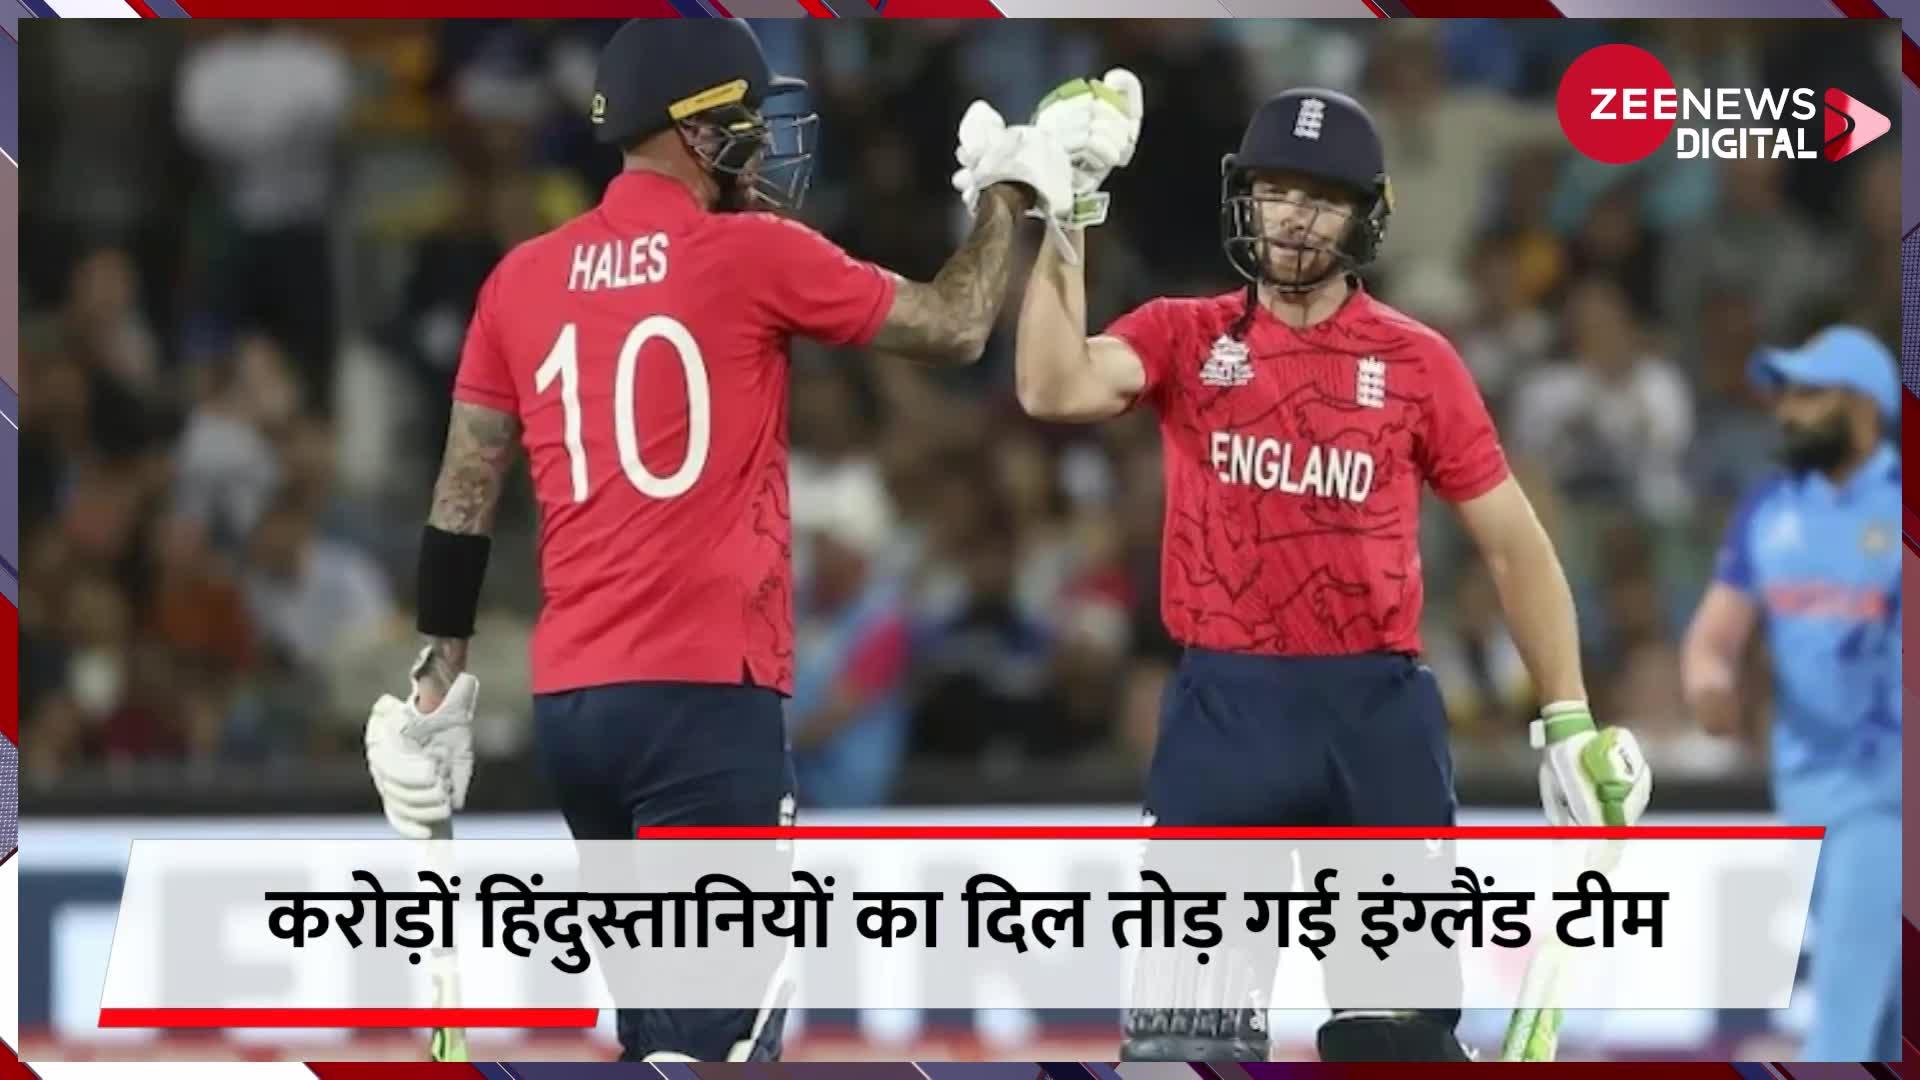 करोड़ों हिंदुस्तानियों का दिल तोड़ गई इंग्लैंड टीम, एक बार फिर सेमीफाइनल में टूटा ट्रॉफी जीतने का सपना